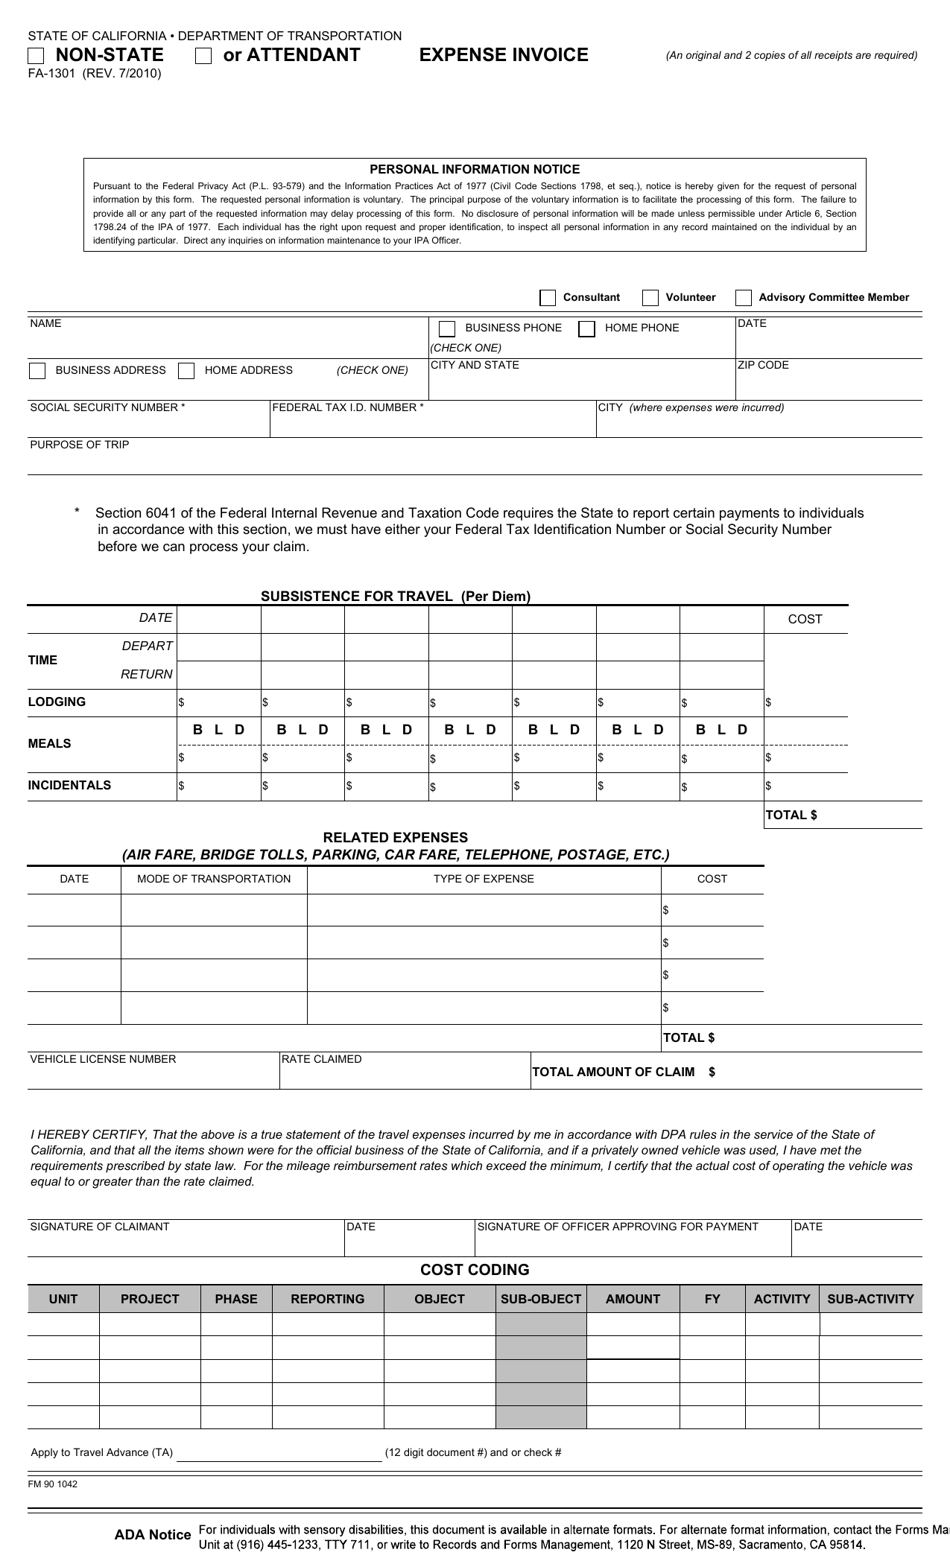 Form FA-1301 Non-state or Attendant Expense Invoice - California, Page 1